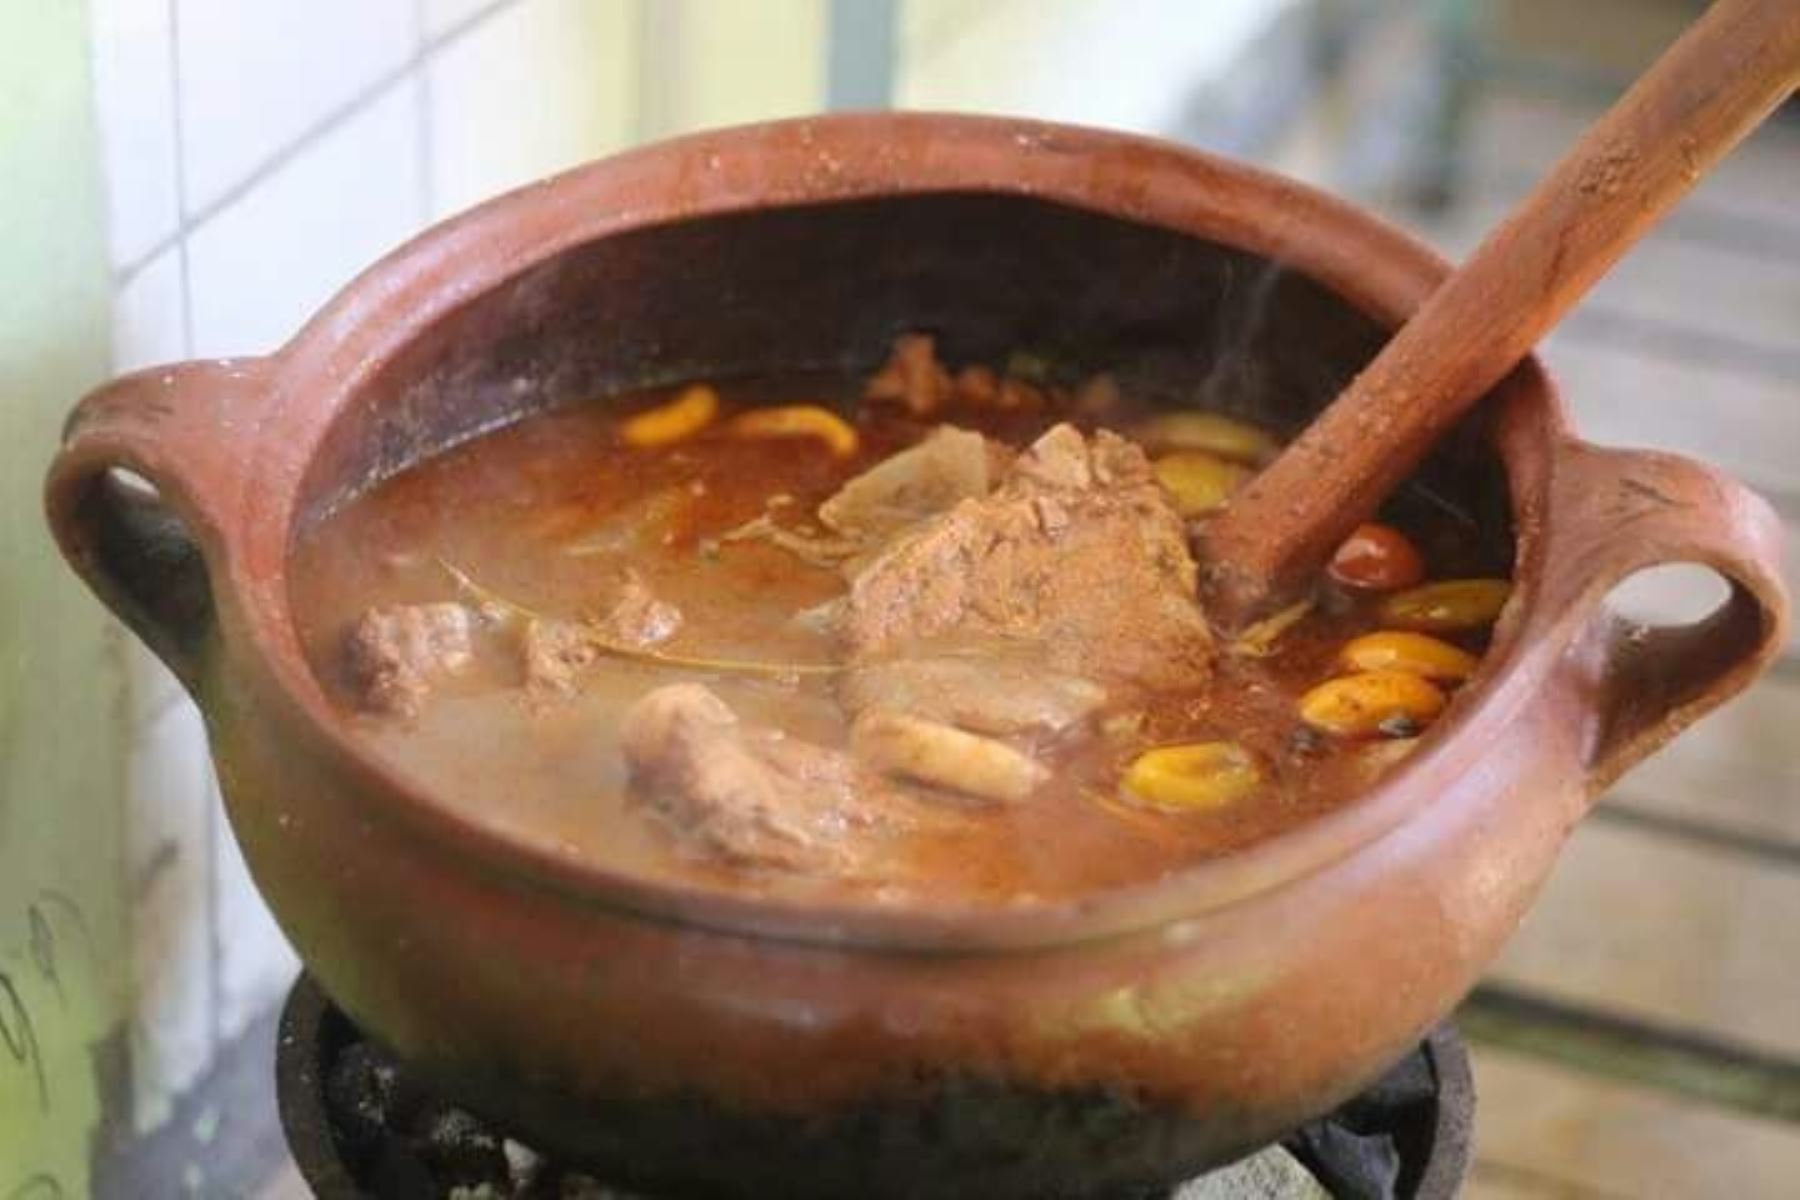 El adobo arequipeño se prepara con carne de chancho, ají colorado, cebolla, ajo y el concho de chicha de guiñapo, bebida típica arequipeña.